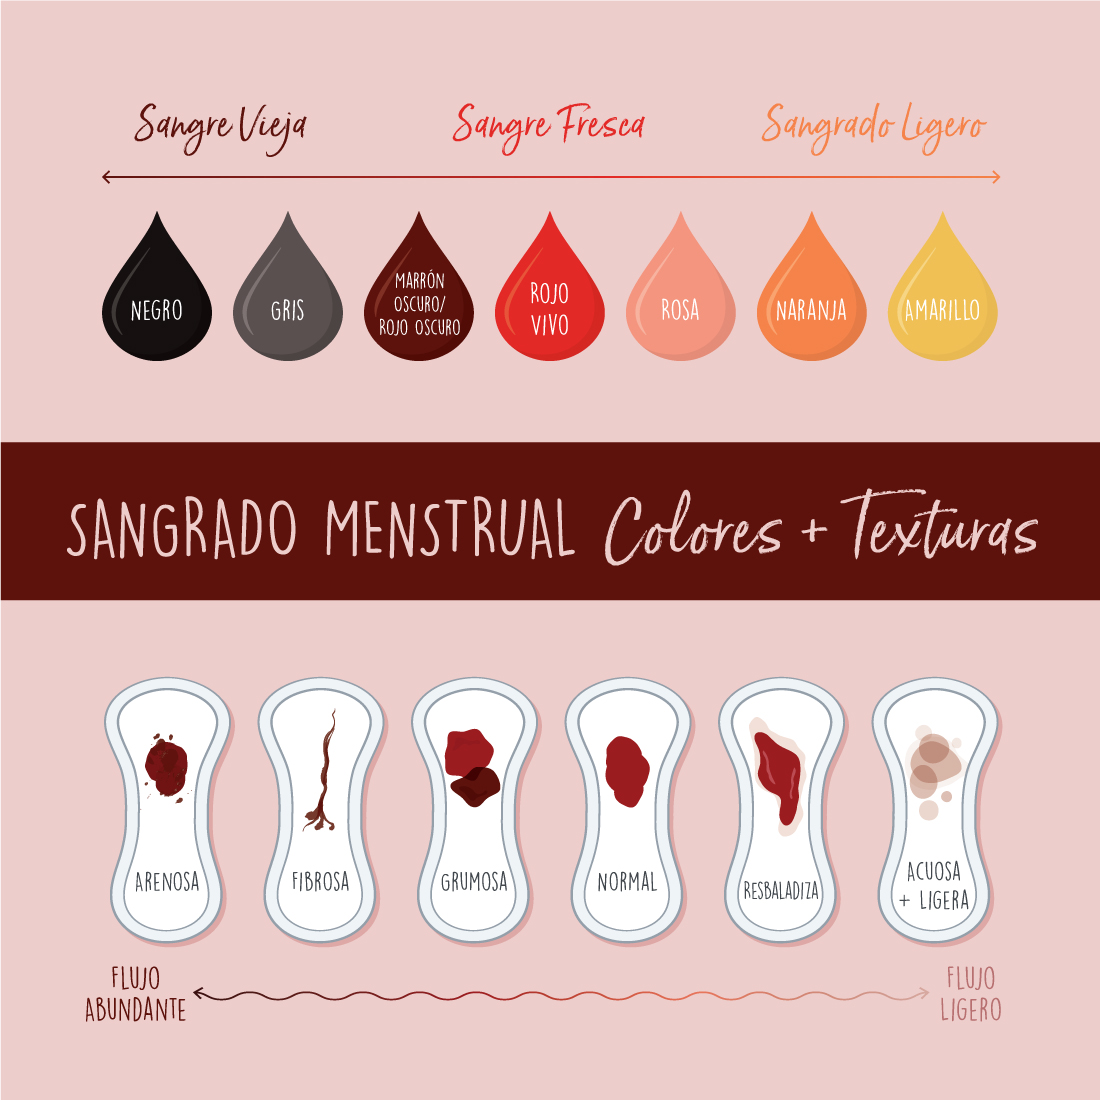 Tipos Y Colores De La Sangre Menstrual Contenido Y Usos My Xxx Hot Girl 7326